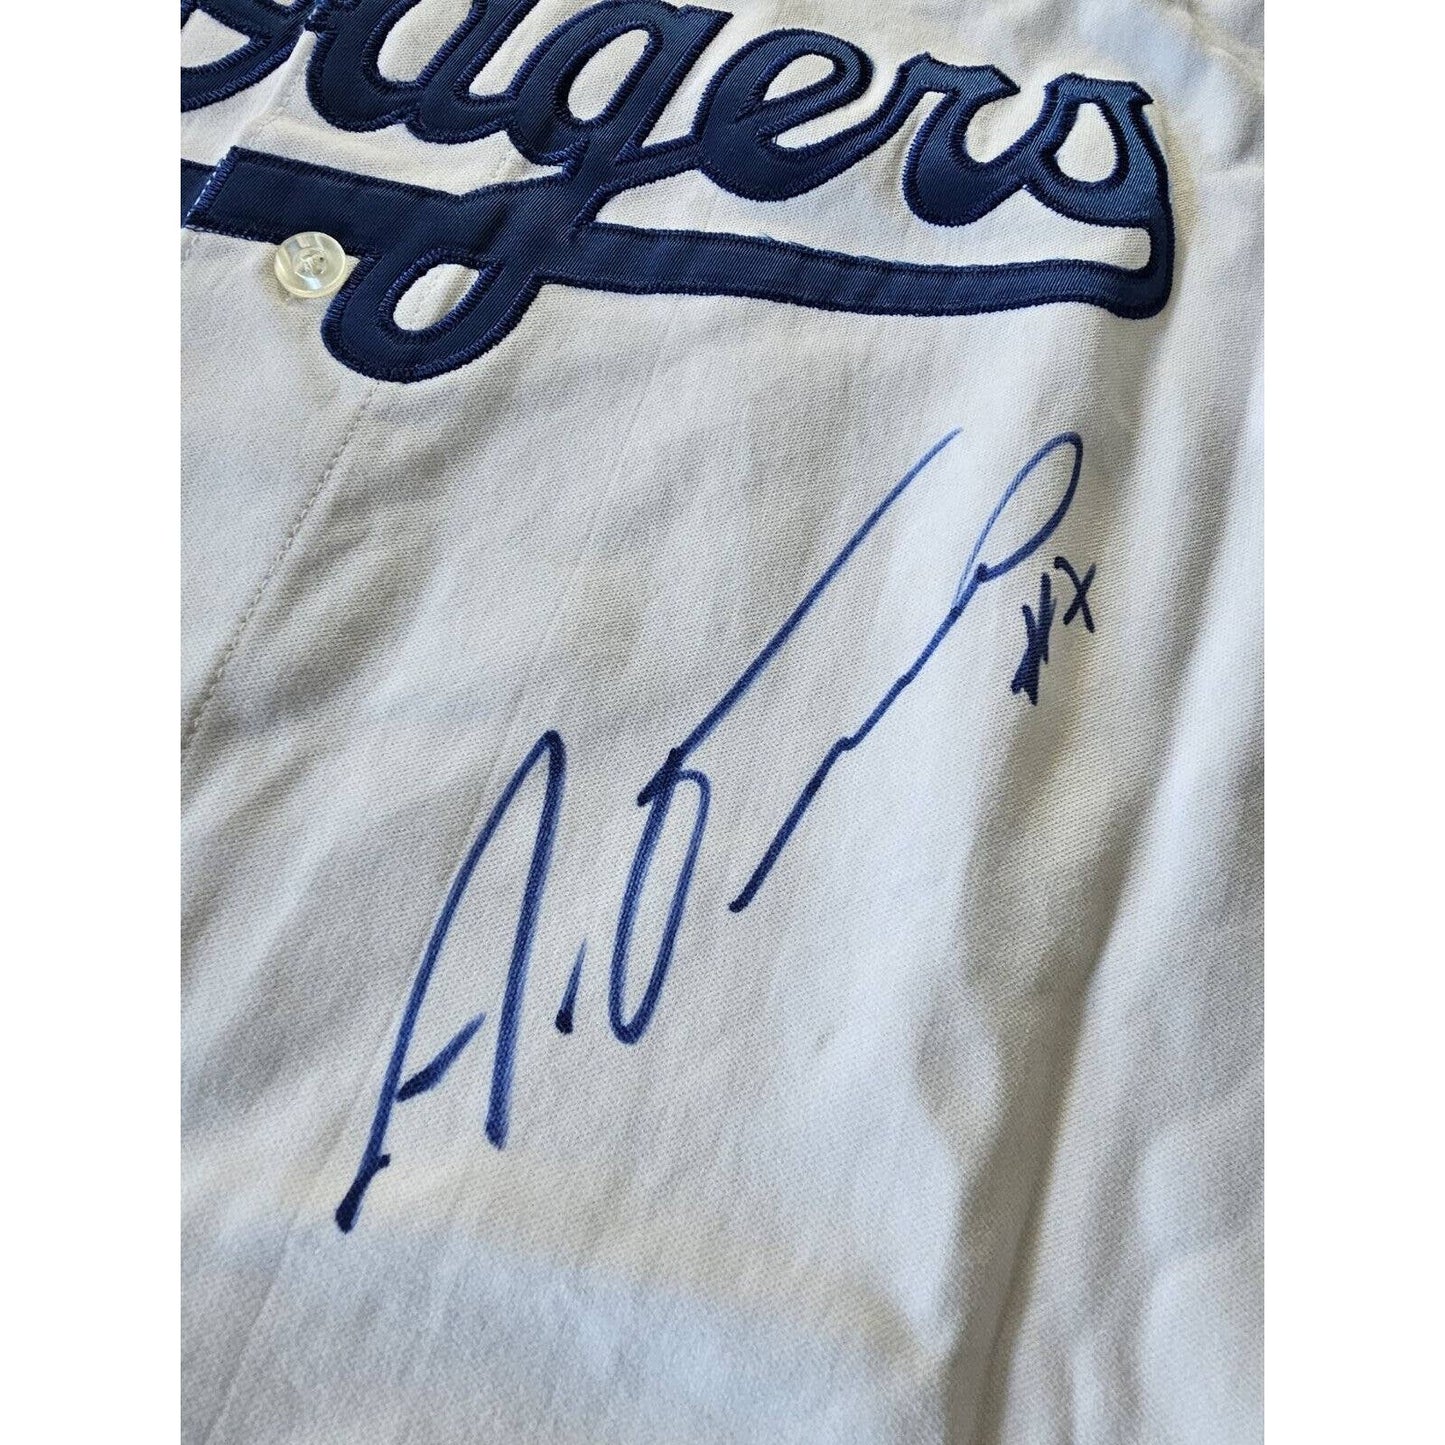 Alex Guerrero Autographed/Signed Jersey Los Angeles Dodgers LA Multiple Inscript